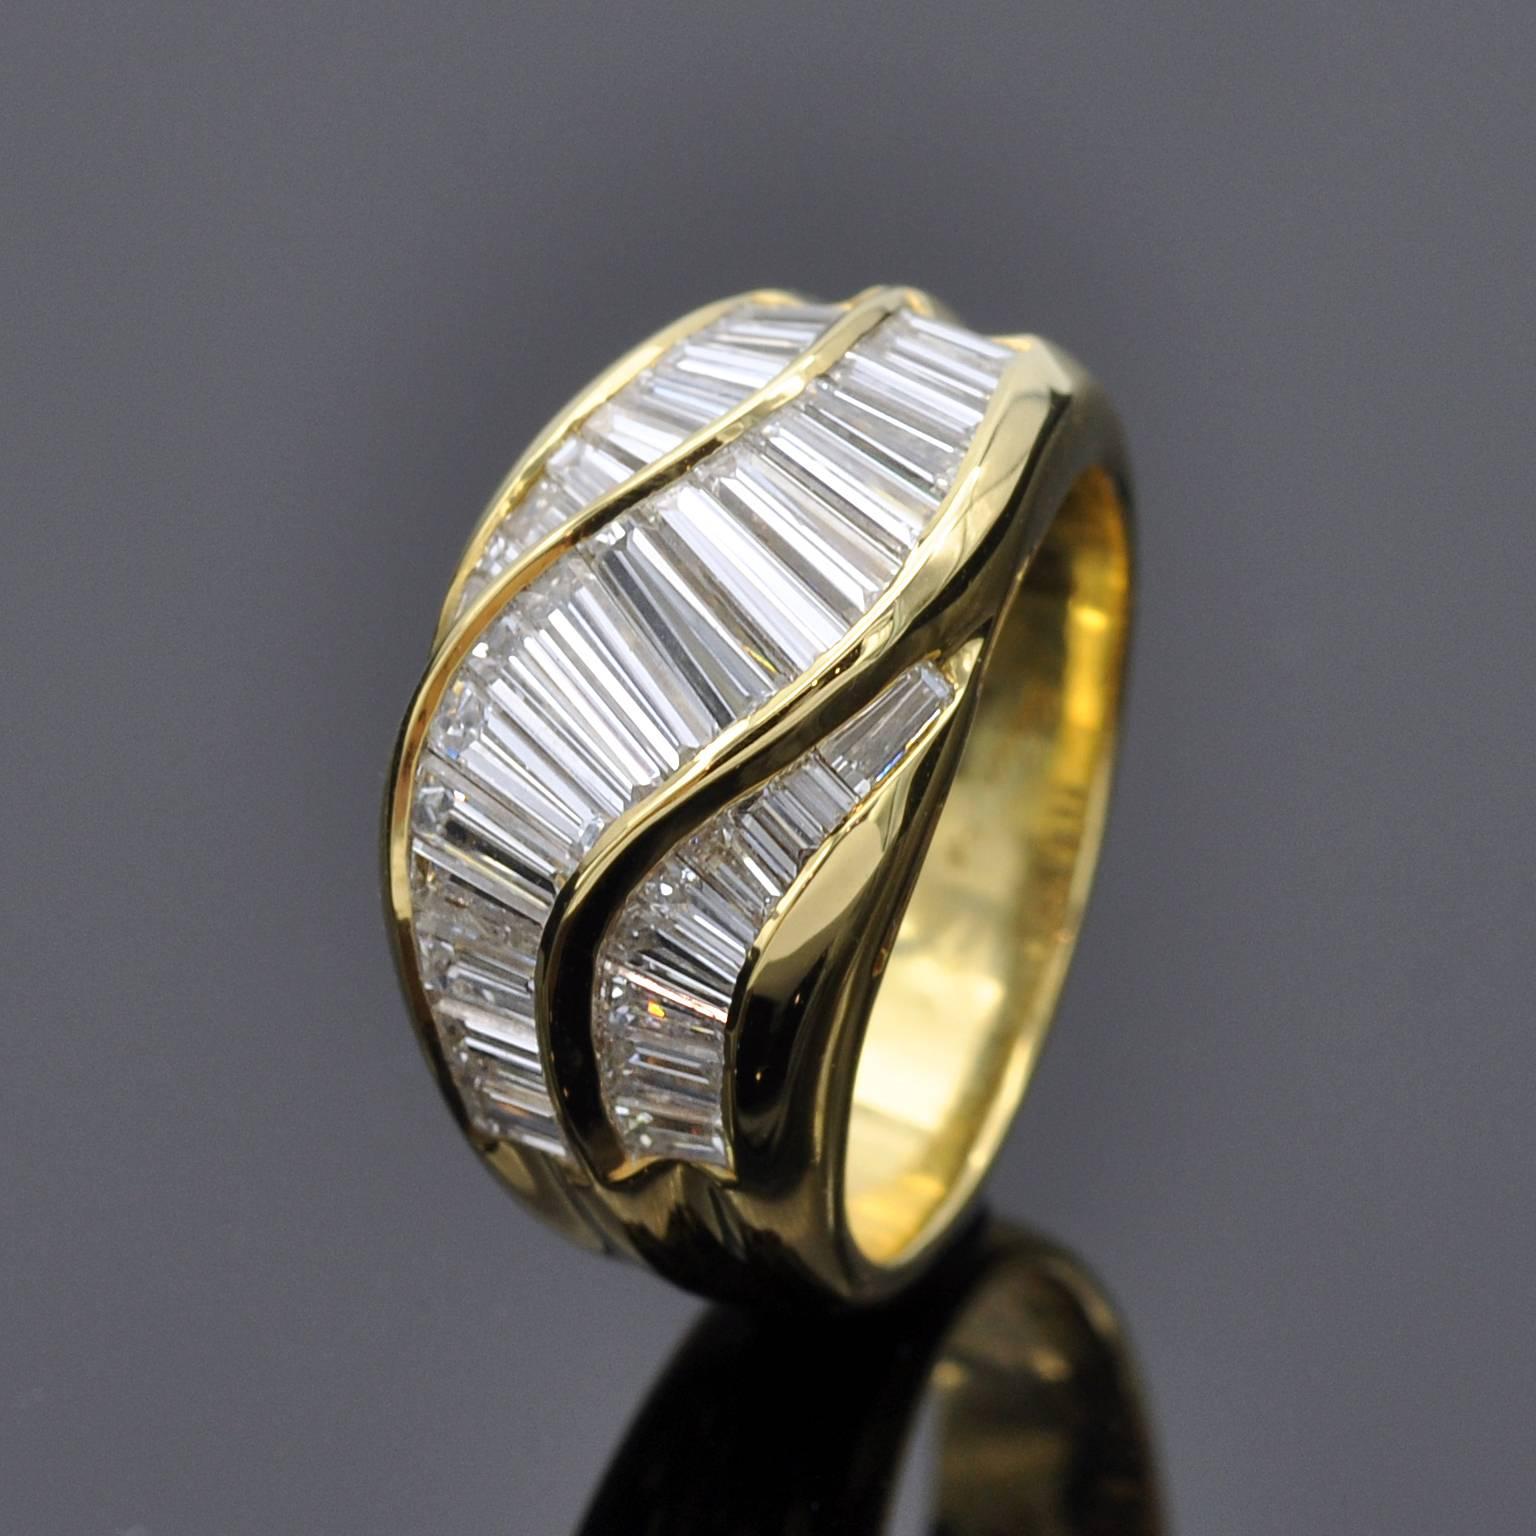  Exquisiter Bandring mit 2,95 Karat Diamanten im Baguetteschliff und spitz zulaufendem Schliff, die eine anmutig geschwungene Bewegung bilden.
Der Ring aus 18 kt Gold ist sehr gut verarbeitet